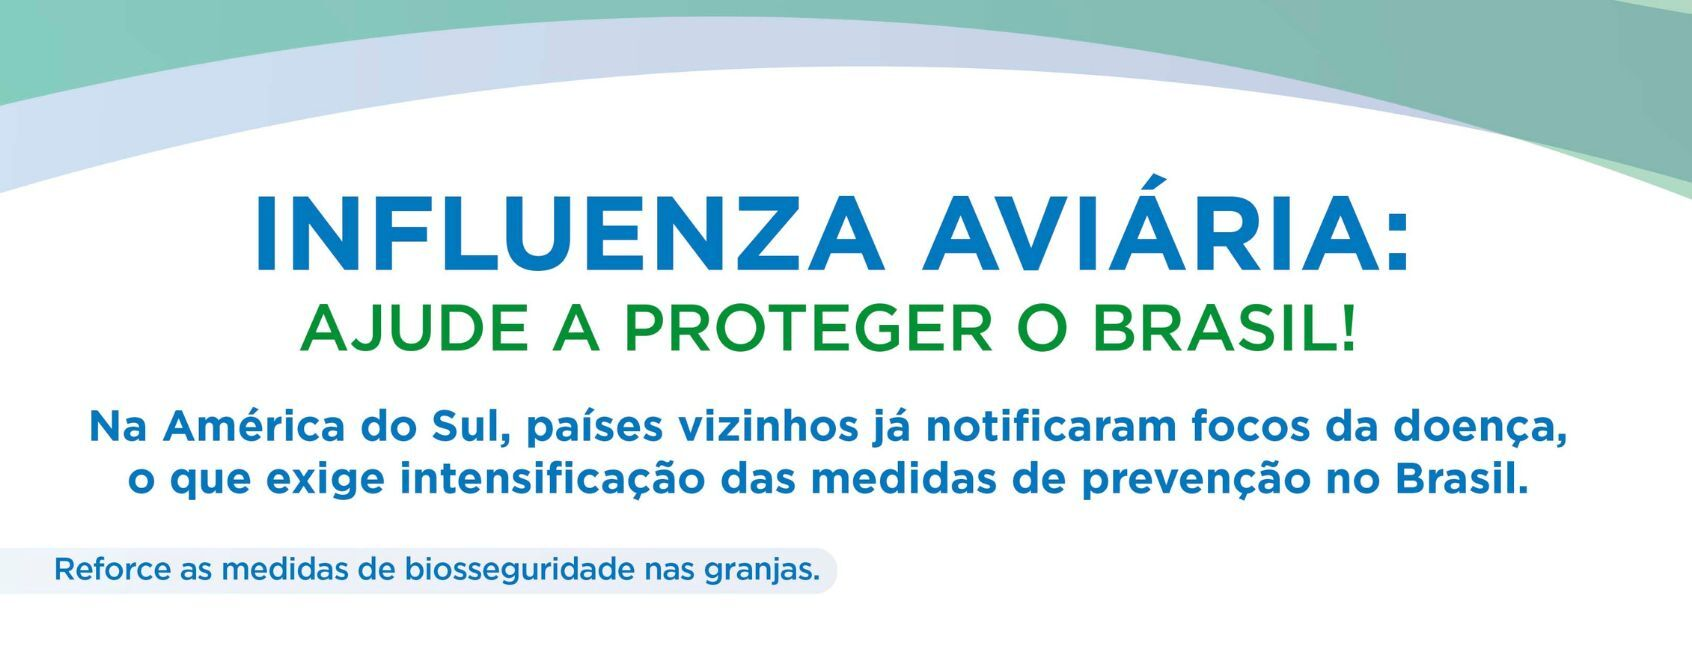 CNA divulga comunicado sobre Influenza Aviária com orientações técnicas